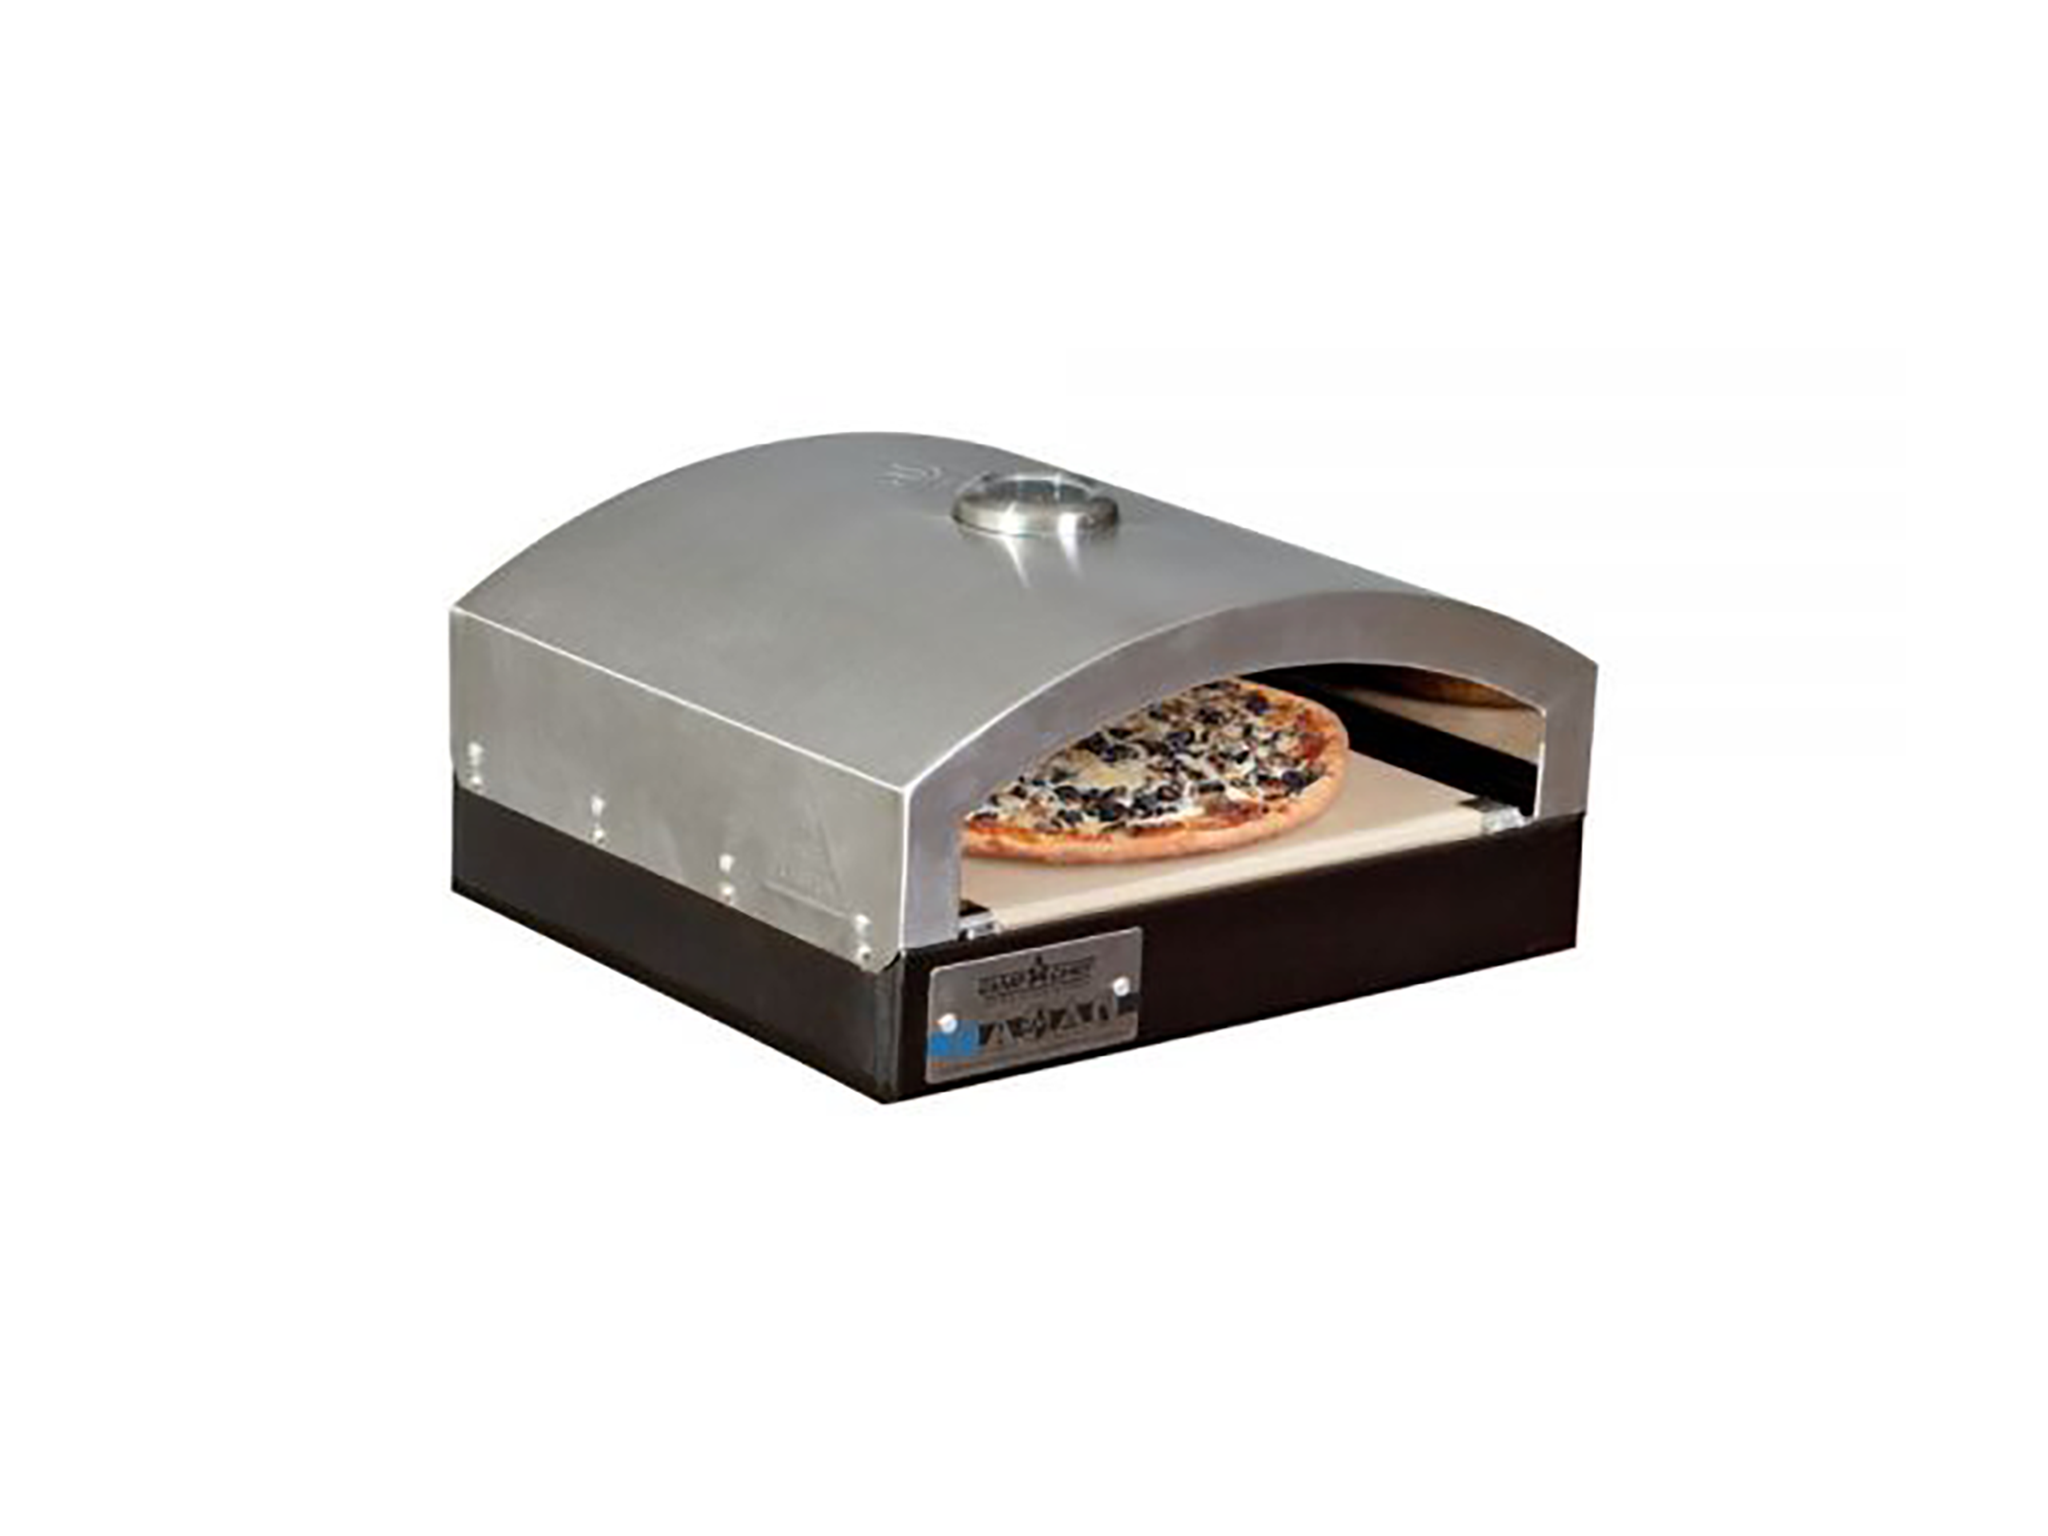 best outdoor pizza ovens